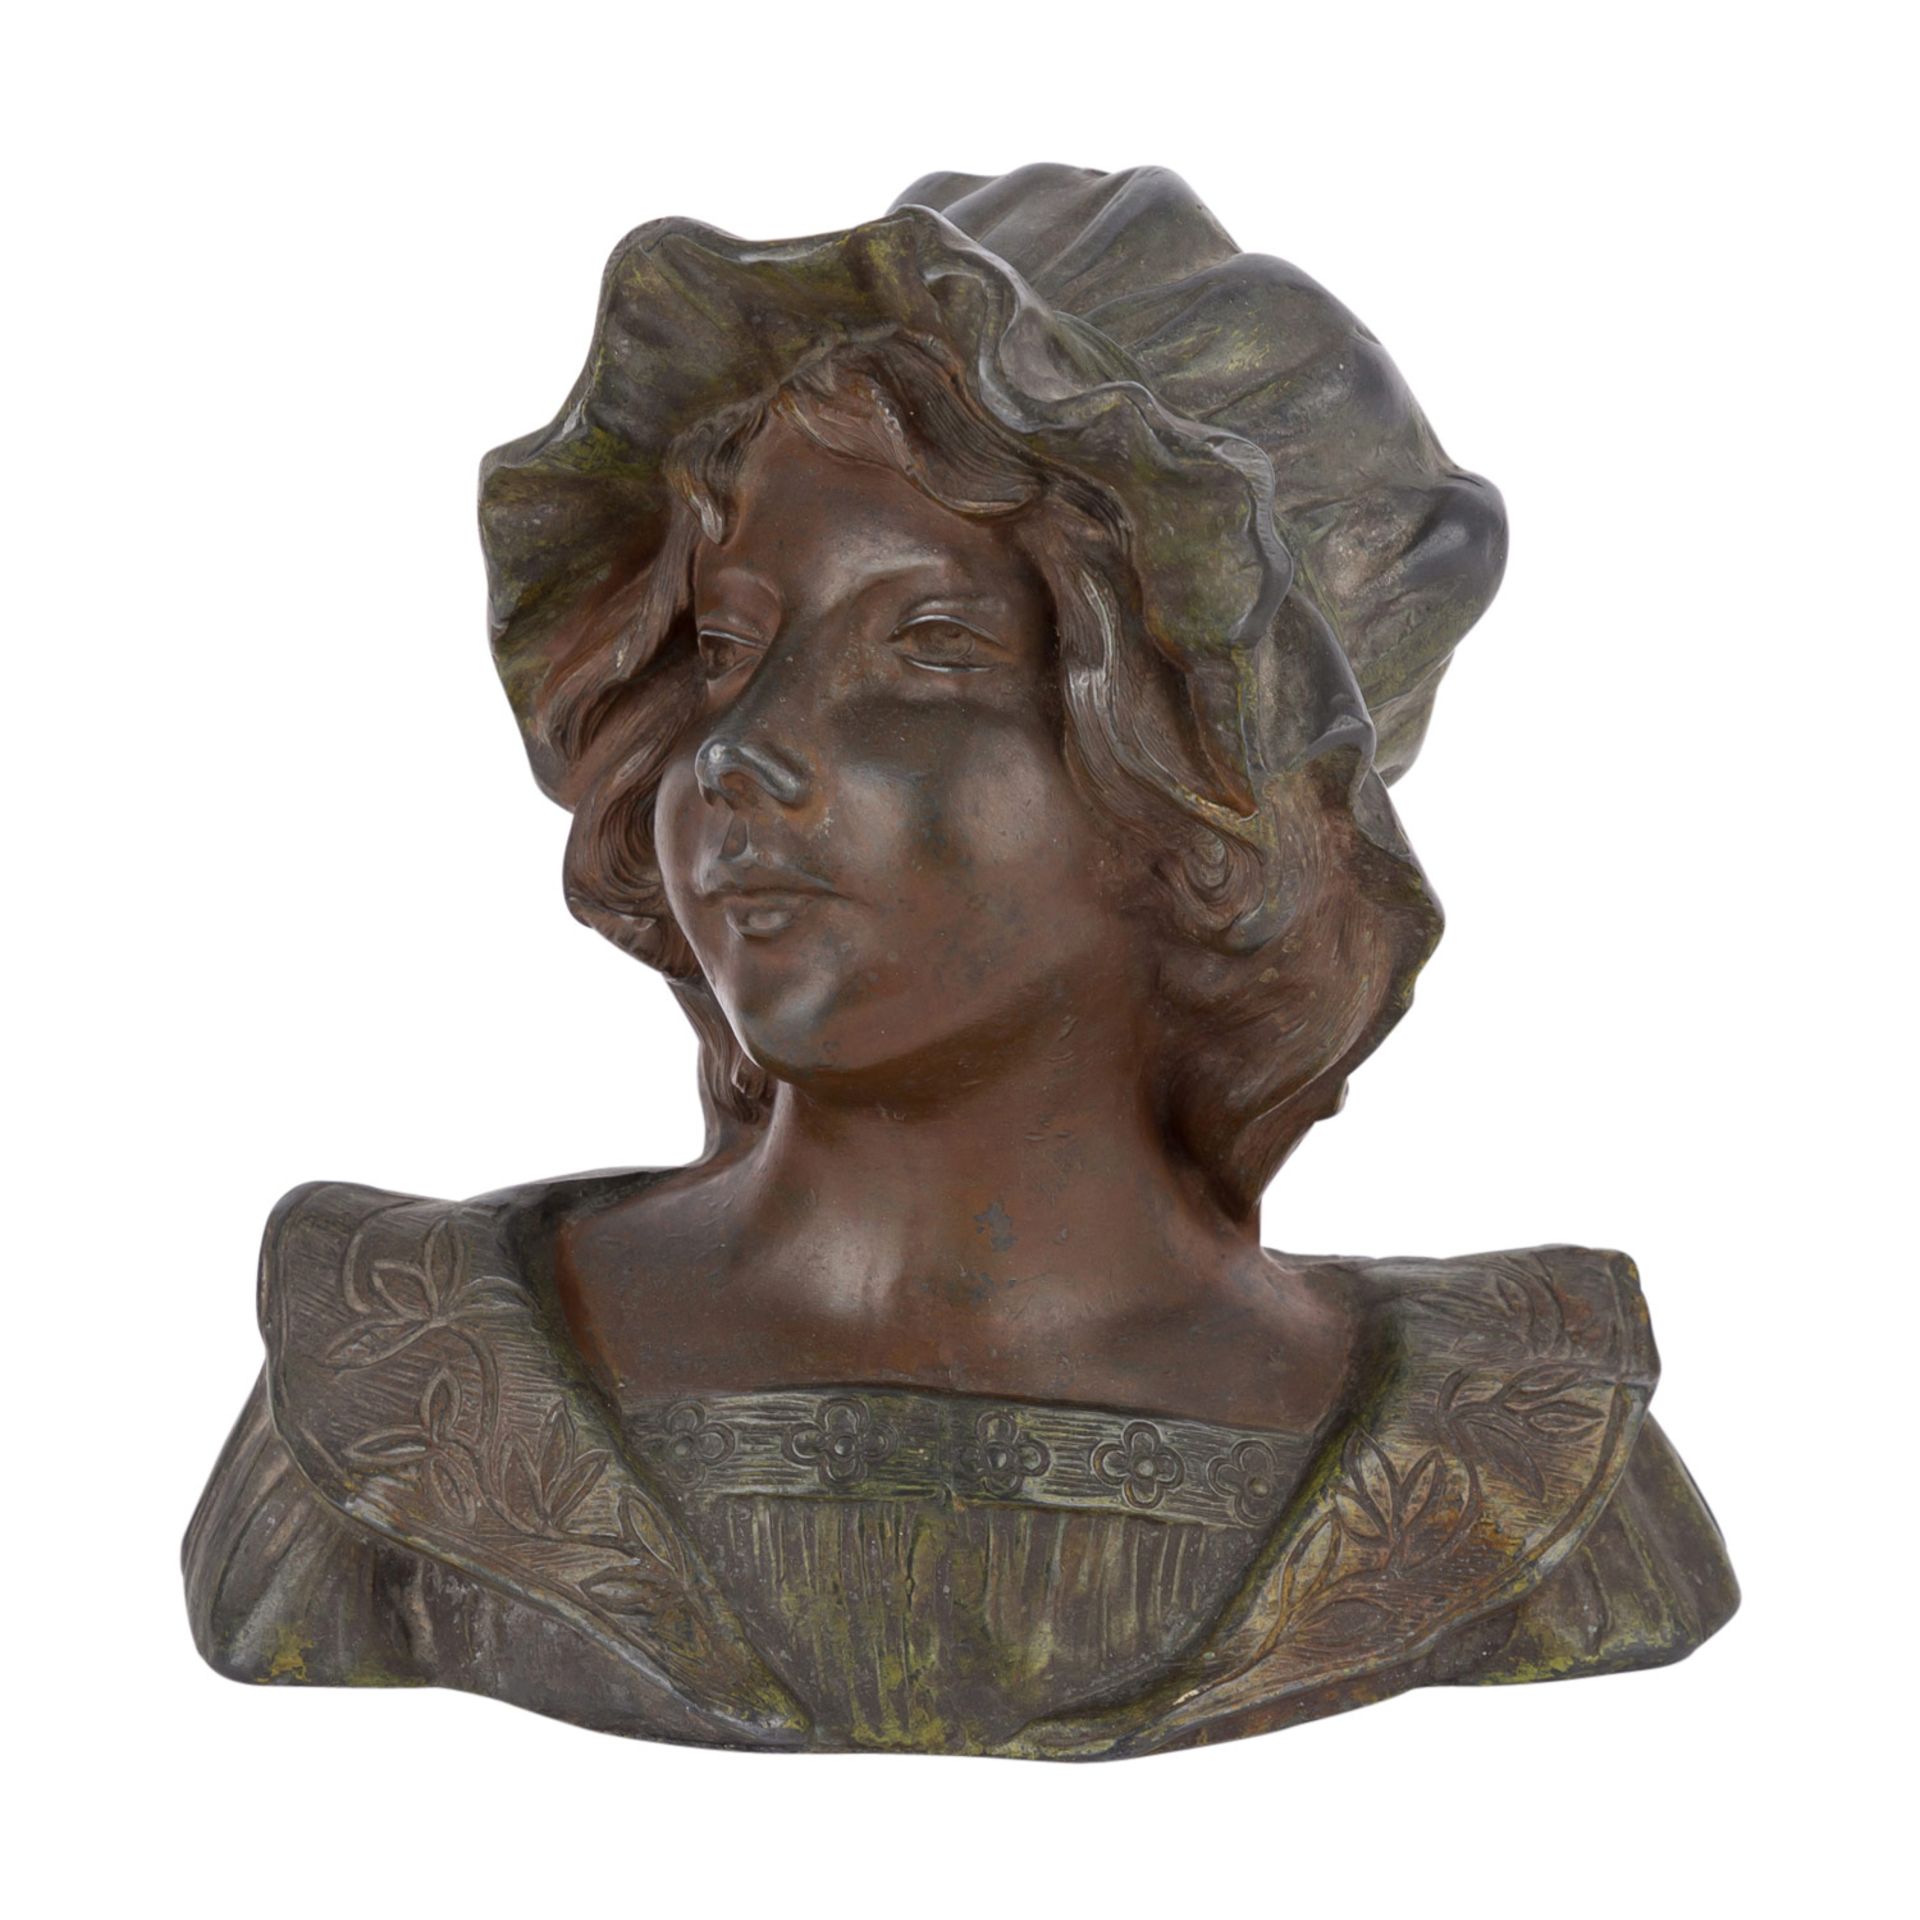 RUCHOT, CHARLES (1880-1915) "Dame mit Haube"Zinnguss bronziert, signiert "Ch. Ruchot", H: 15 cm.